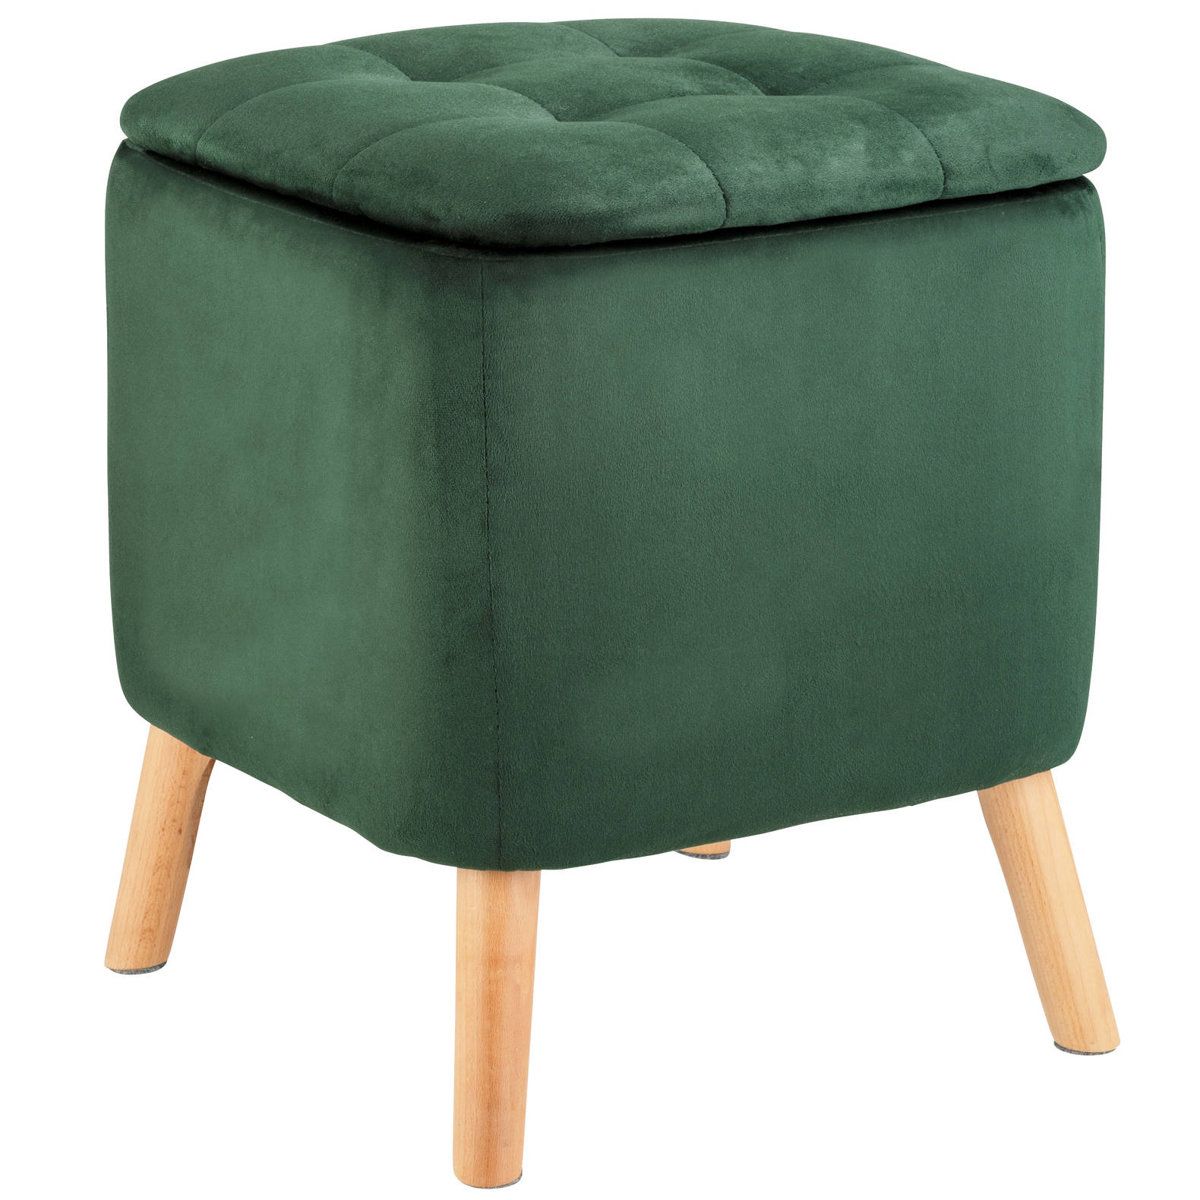 Stolička do obývacího pokoje EMMA, zelená, 42,5 cm, WENKO - EMAKO.CZ s.r.o.